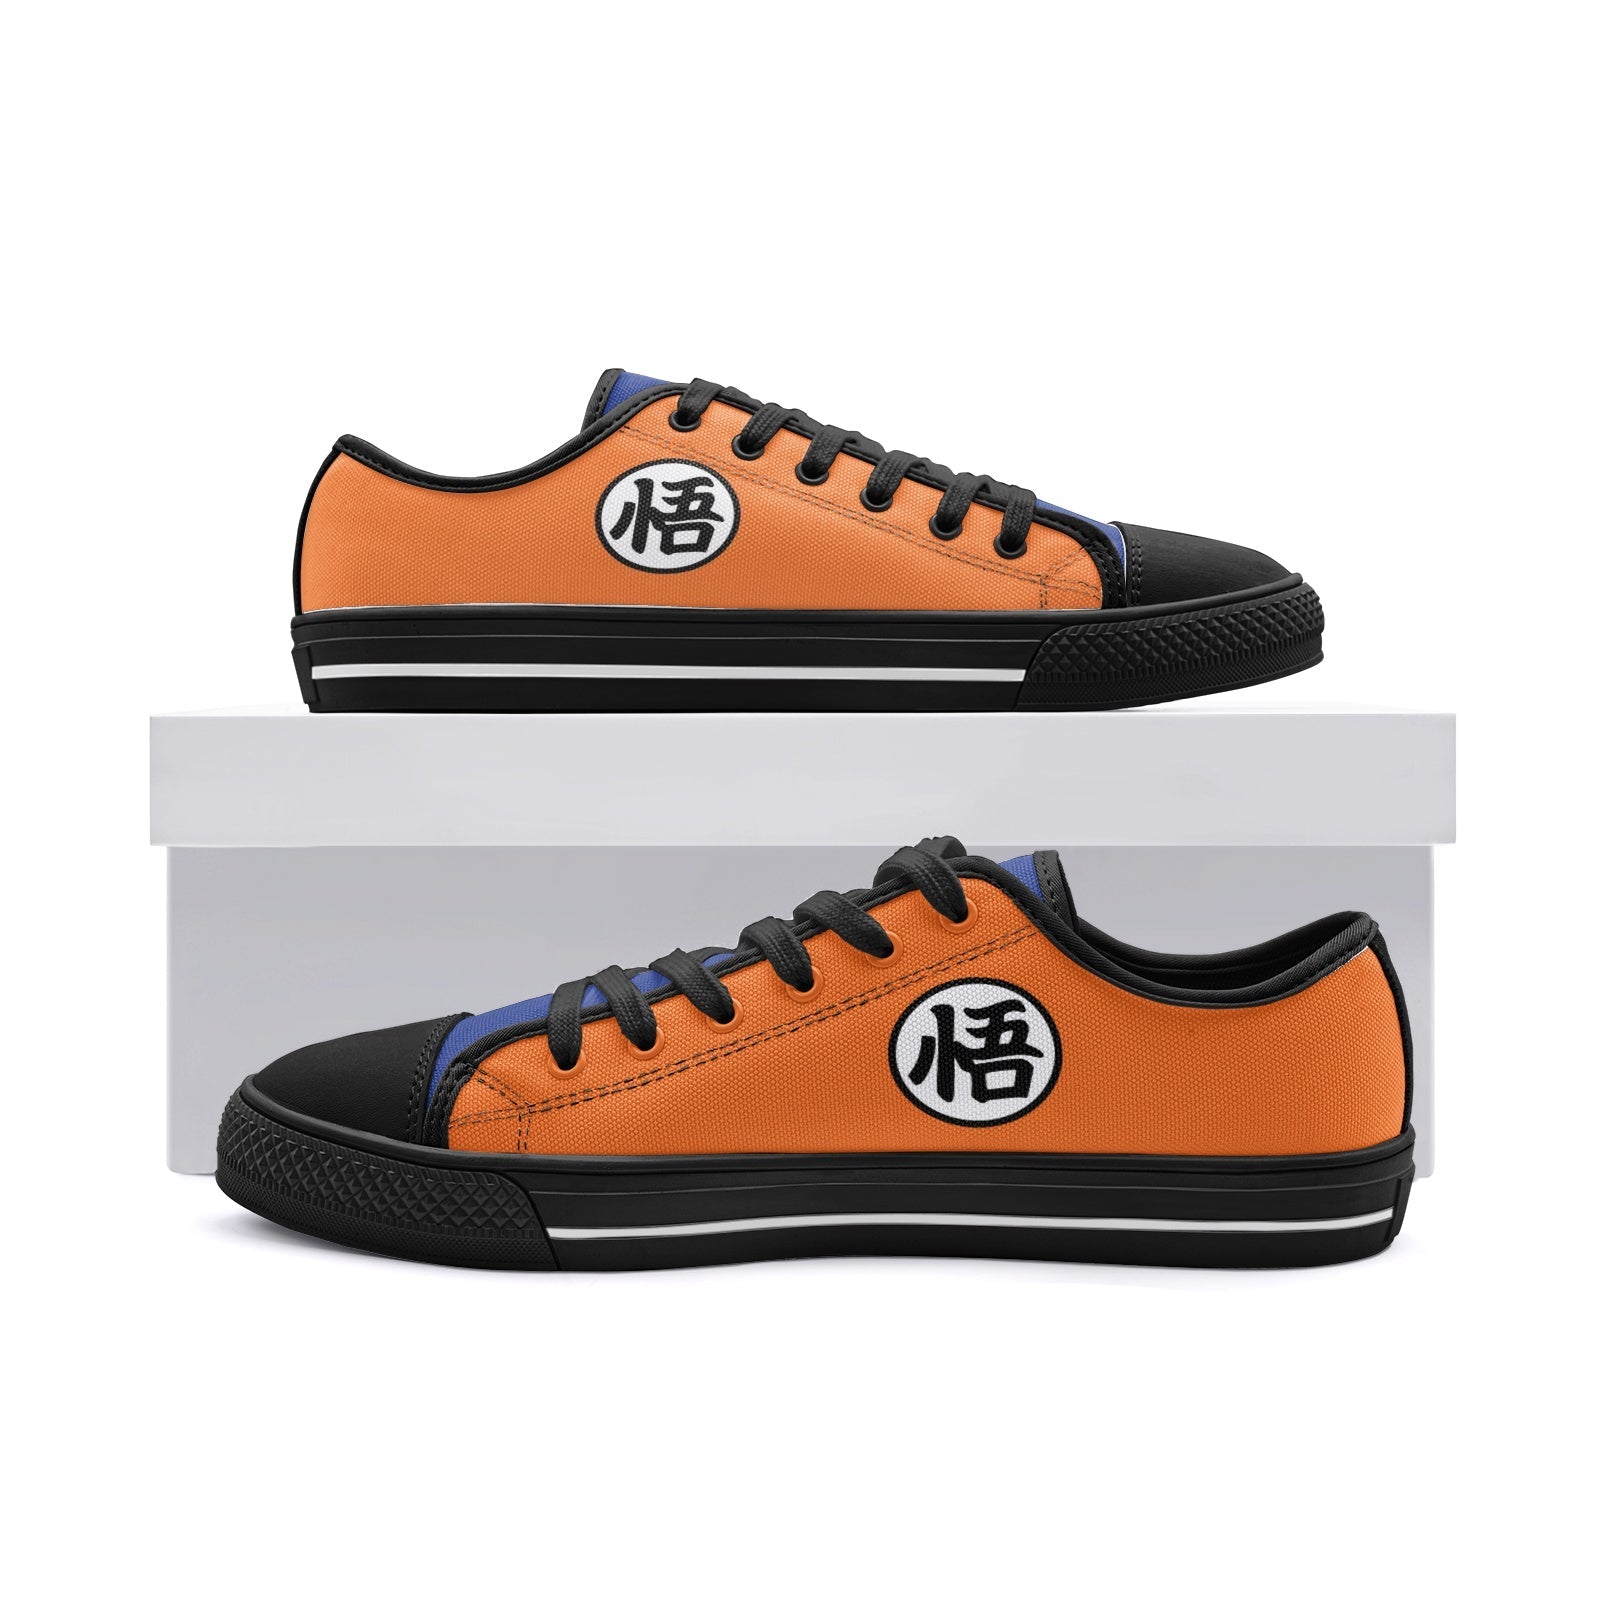 Goku Dragon Ball Z Classic Low Top Canvas Shoes-3 Men / 4.5 Women-White-Anime Shoe Shop